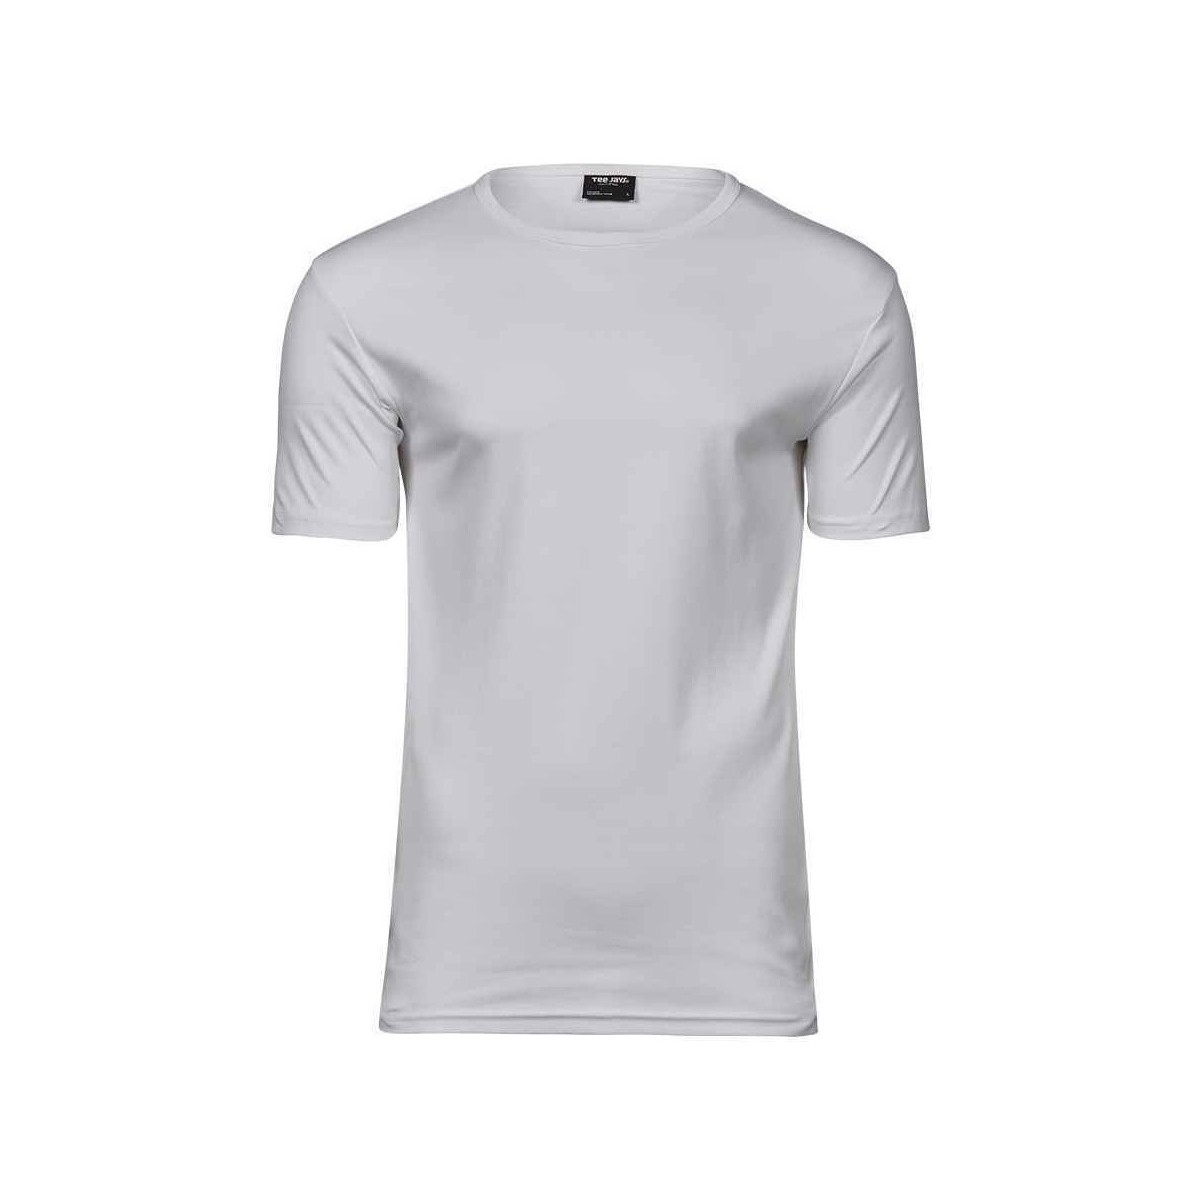 textil Camisetas manga larga Tee Jays Interlock Blanco